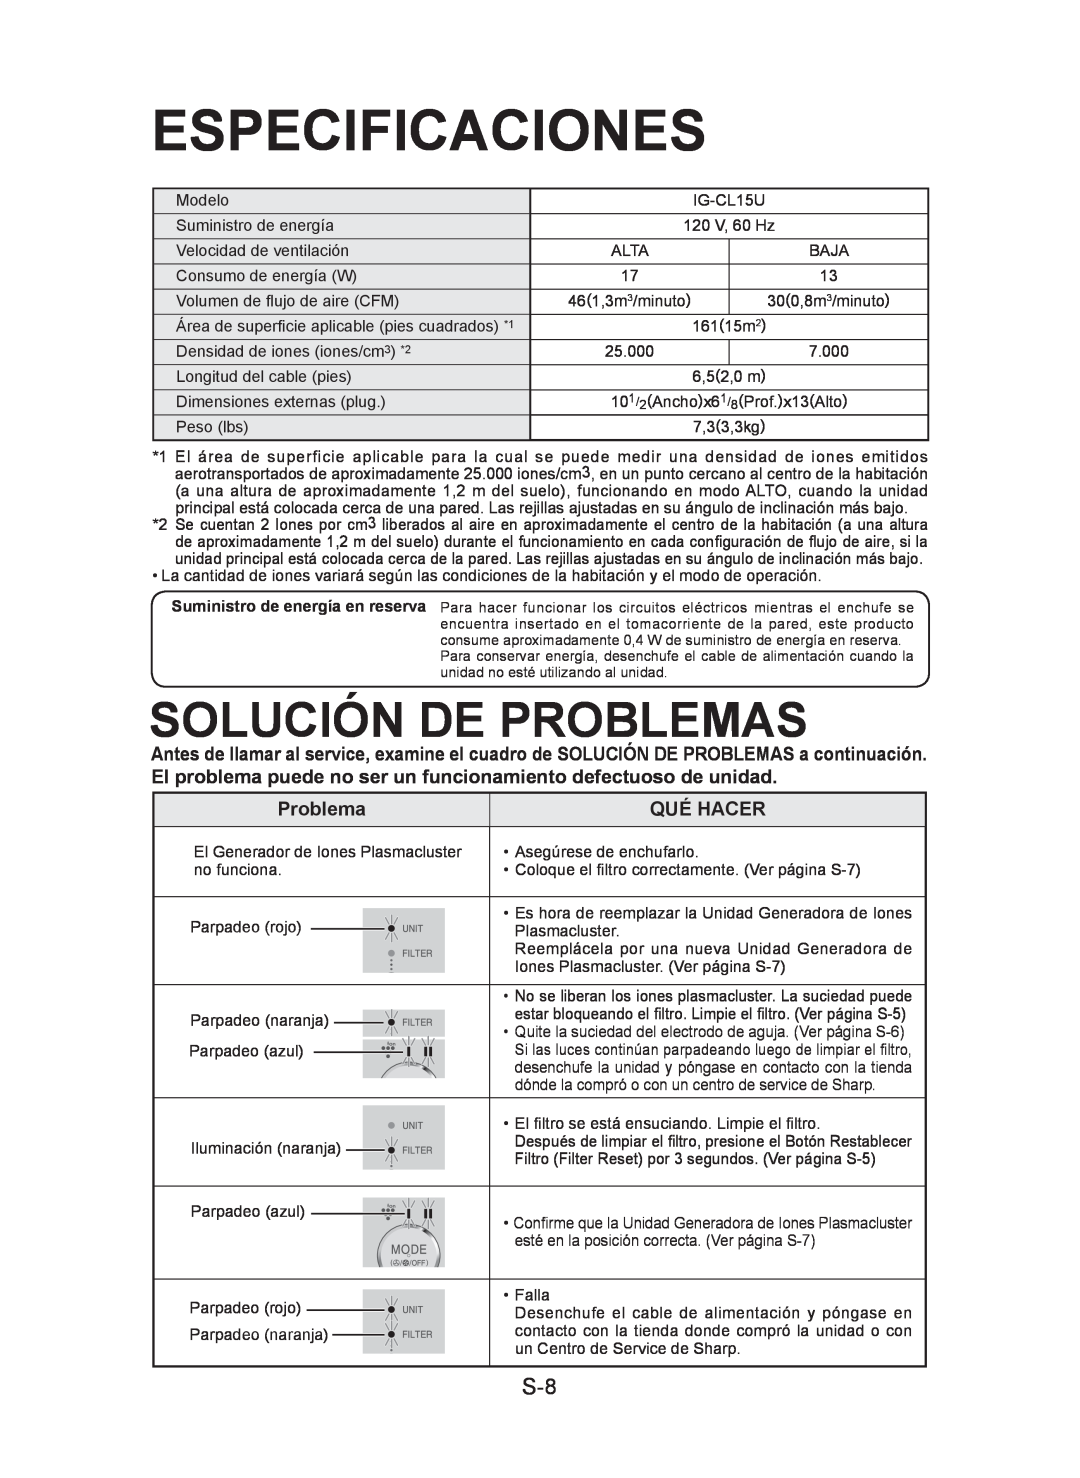 Sharp IG-CL15U operation manual Especificaciones, Solución De Problemas 